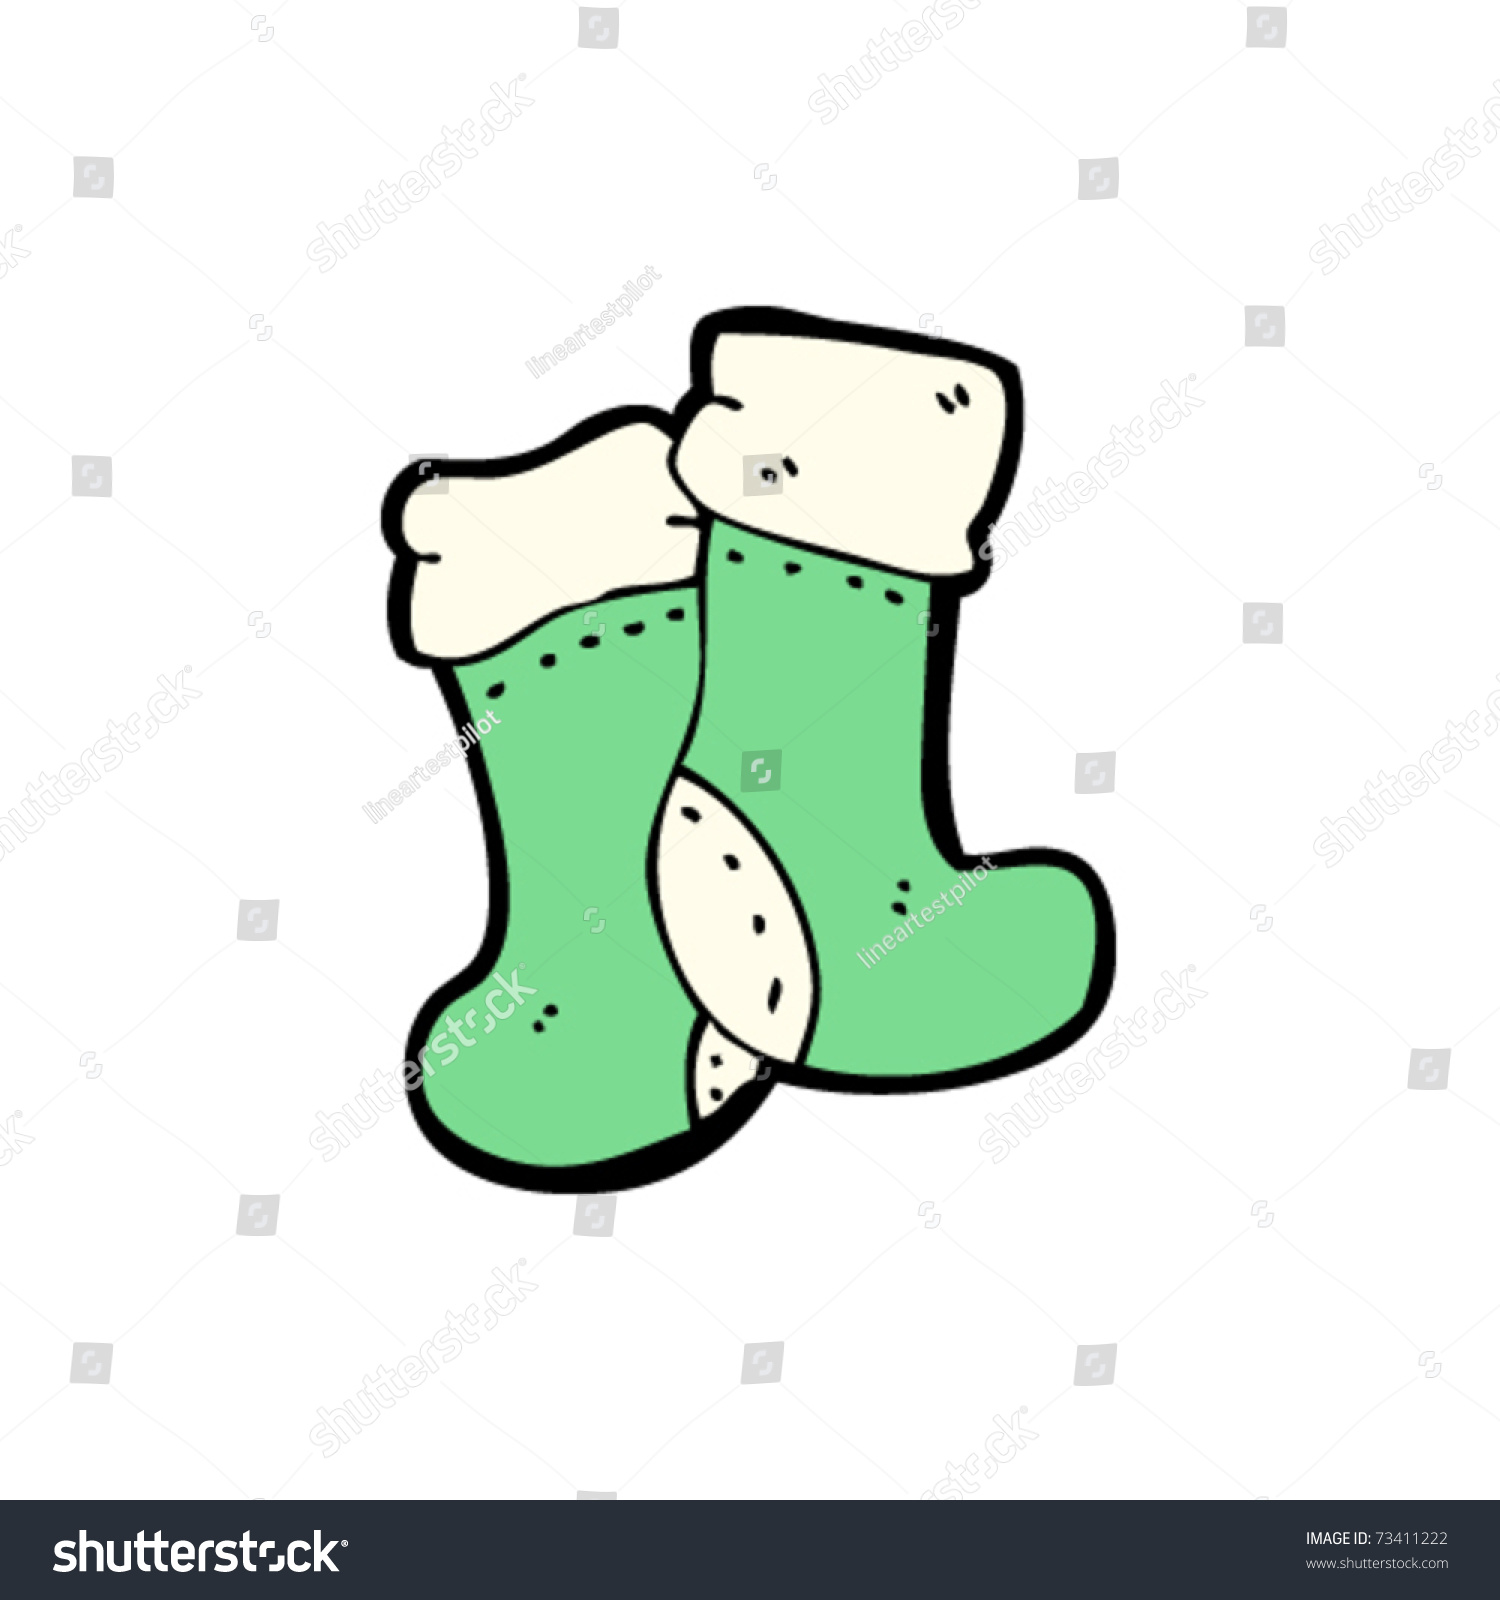 Christmas Socks Cartoon Stock Vector Illustration 73411222 : Shutterstock